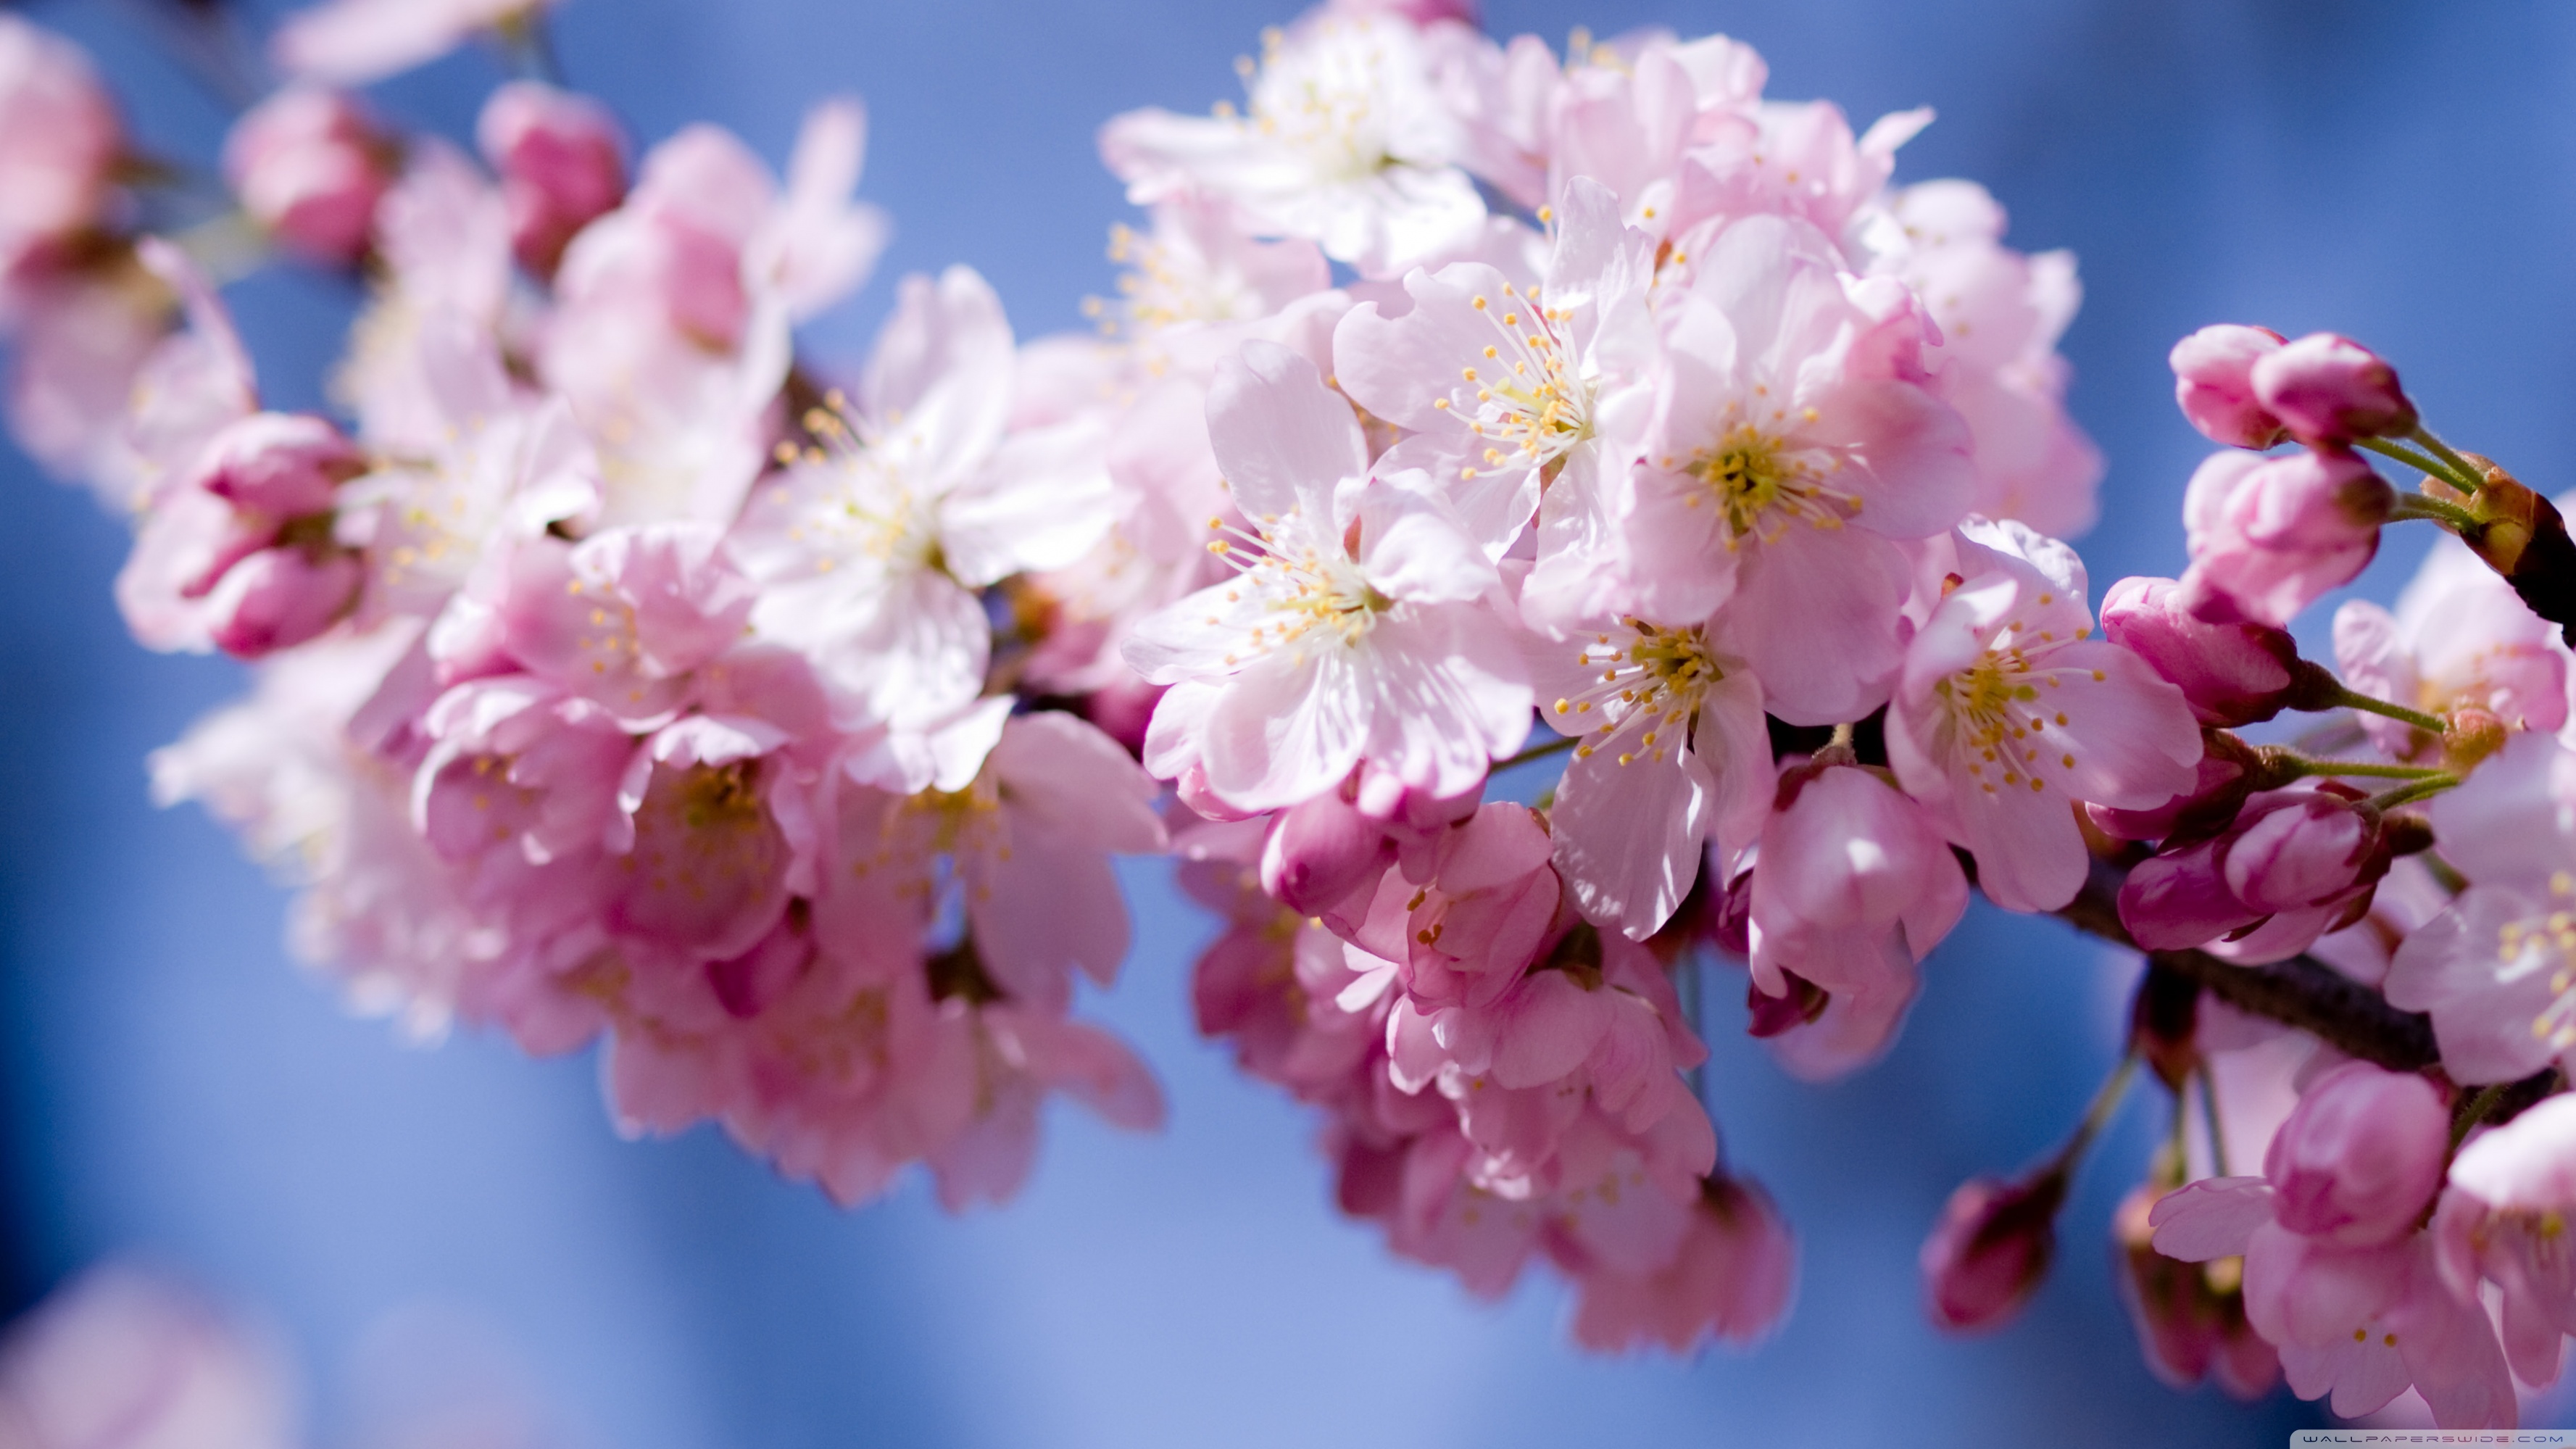 Bahor gullari. Весенние цветы. Красивые весенние цветы. Цветущая вишня.